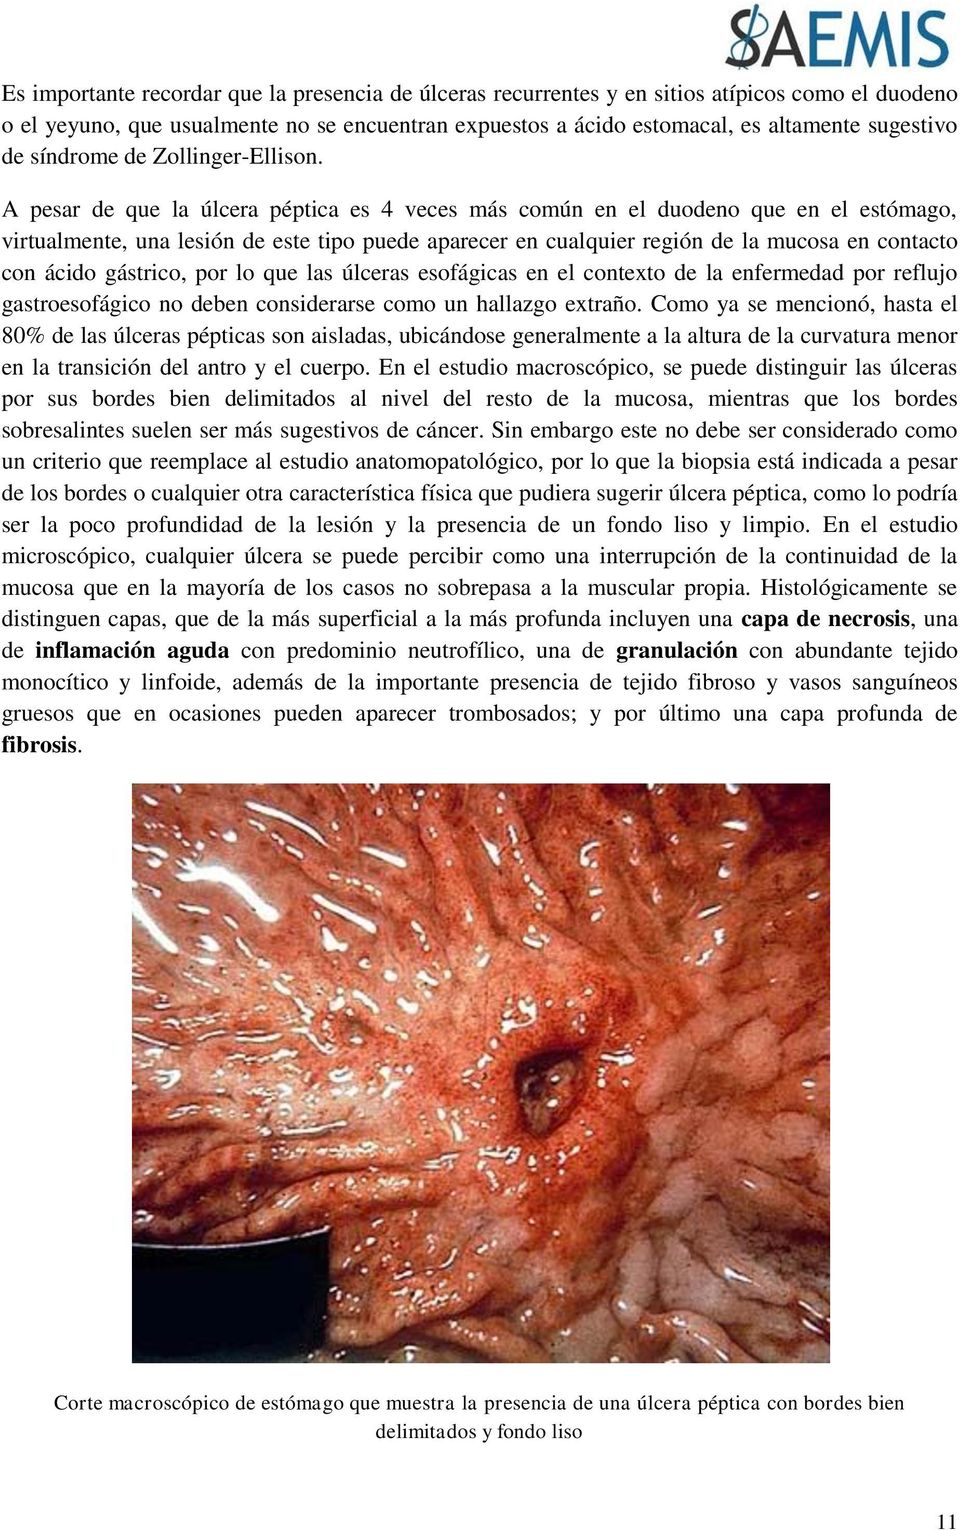 A pesar de que la úlcera péptica es 4 veces más común en el duodeno que en el estómago, virtualmente, una lesión de este tipo puede aparecer en cualquier región de la mucosa en contacto con ácido